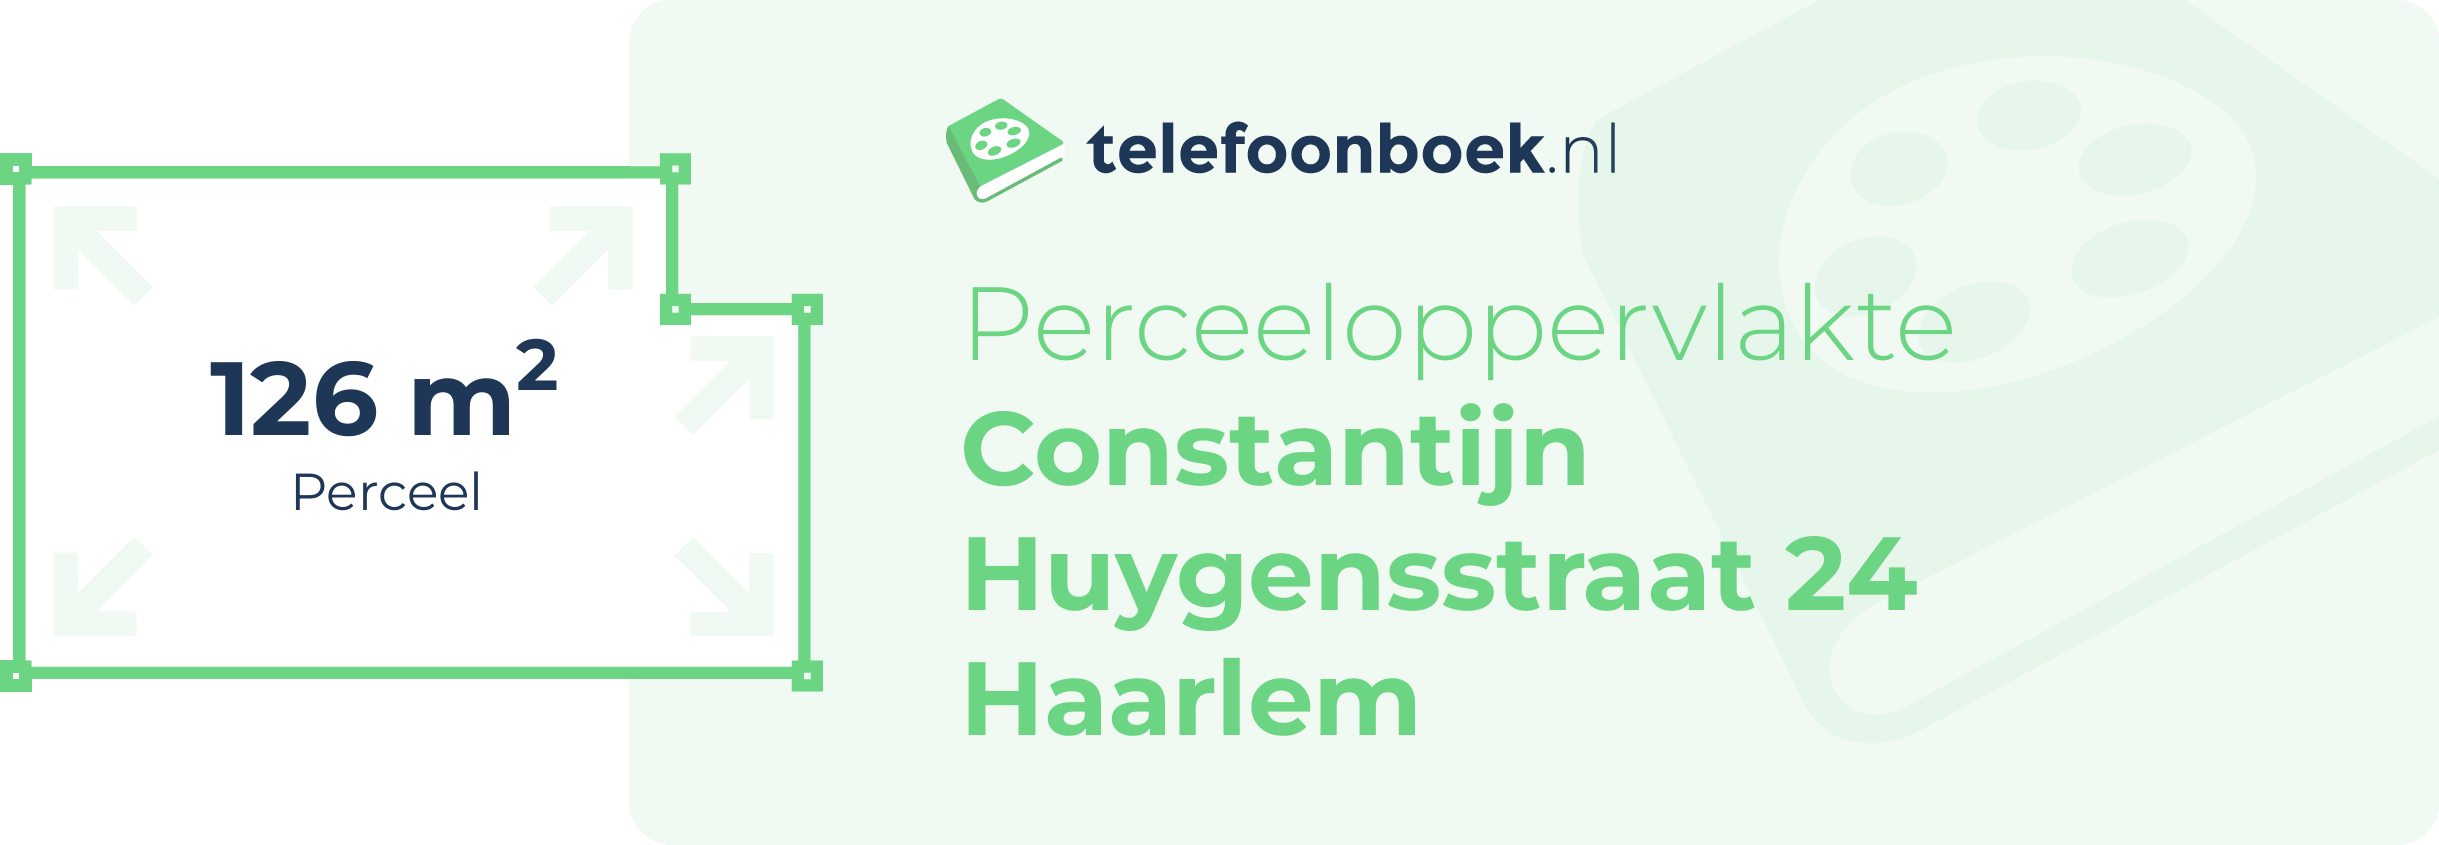 Perceeloppervlakte Constantijn Huygensstraat 24 Haarlem